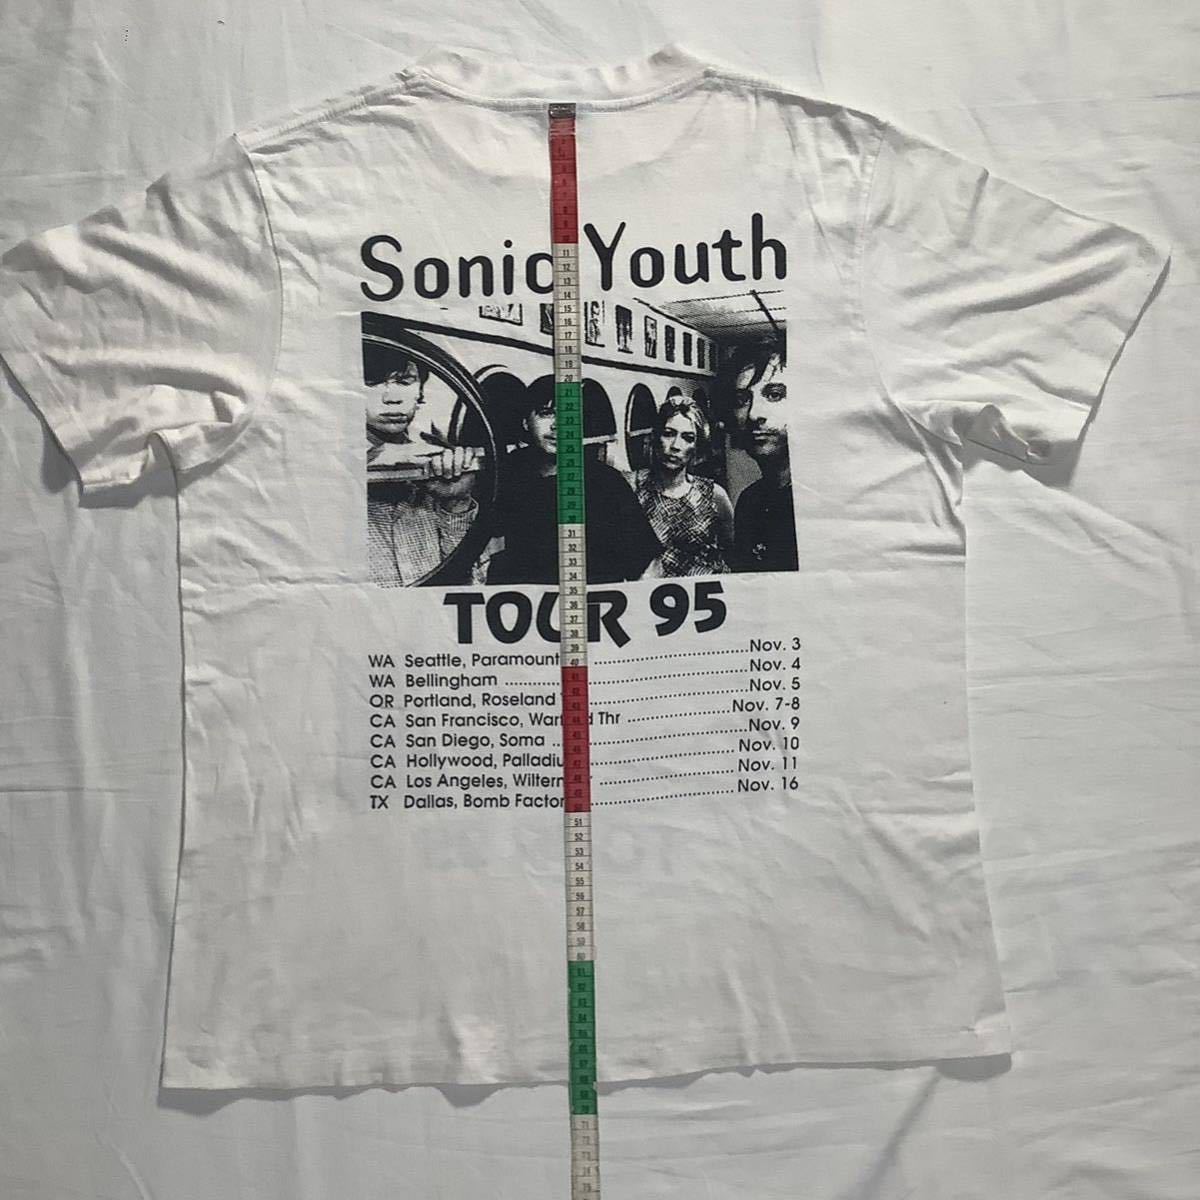 激レア! 1995 Sonic Youth Tour パーキングロット 両面プリント メンバーフォト ヴィンテージ Tシャツ 80s 90s _画像7